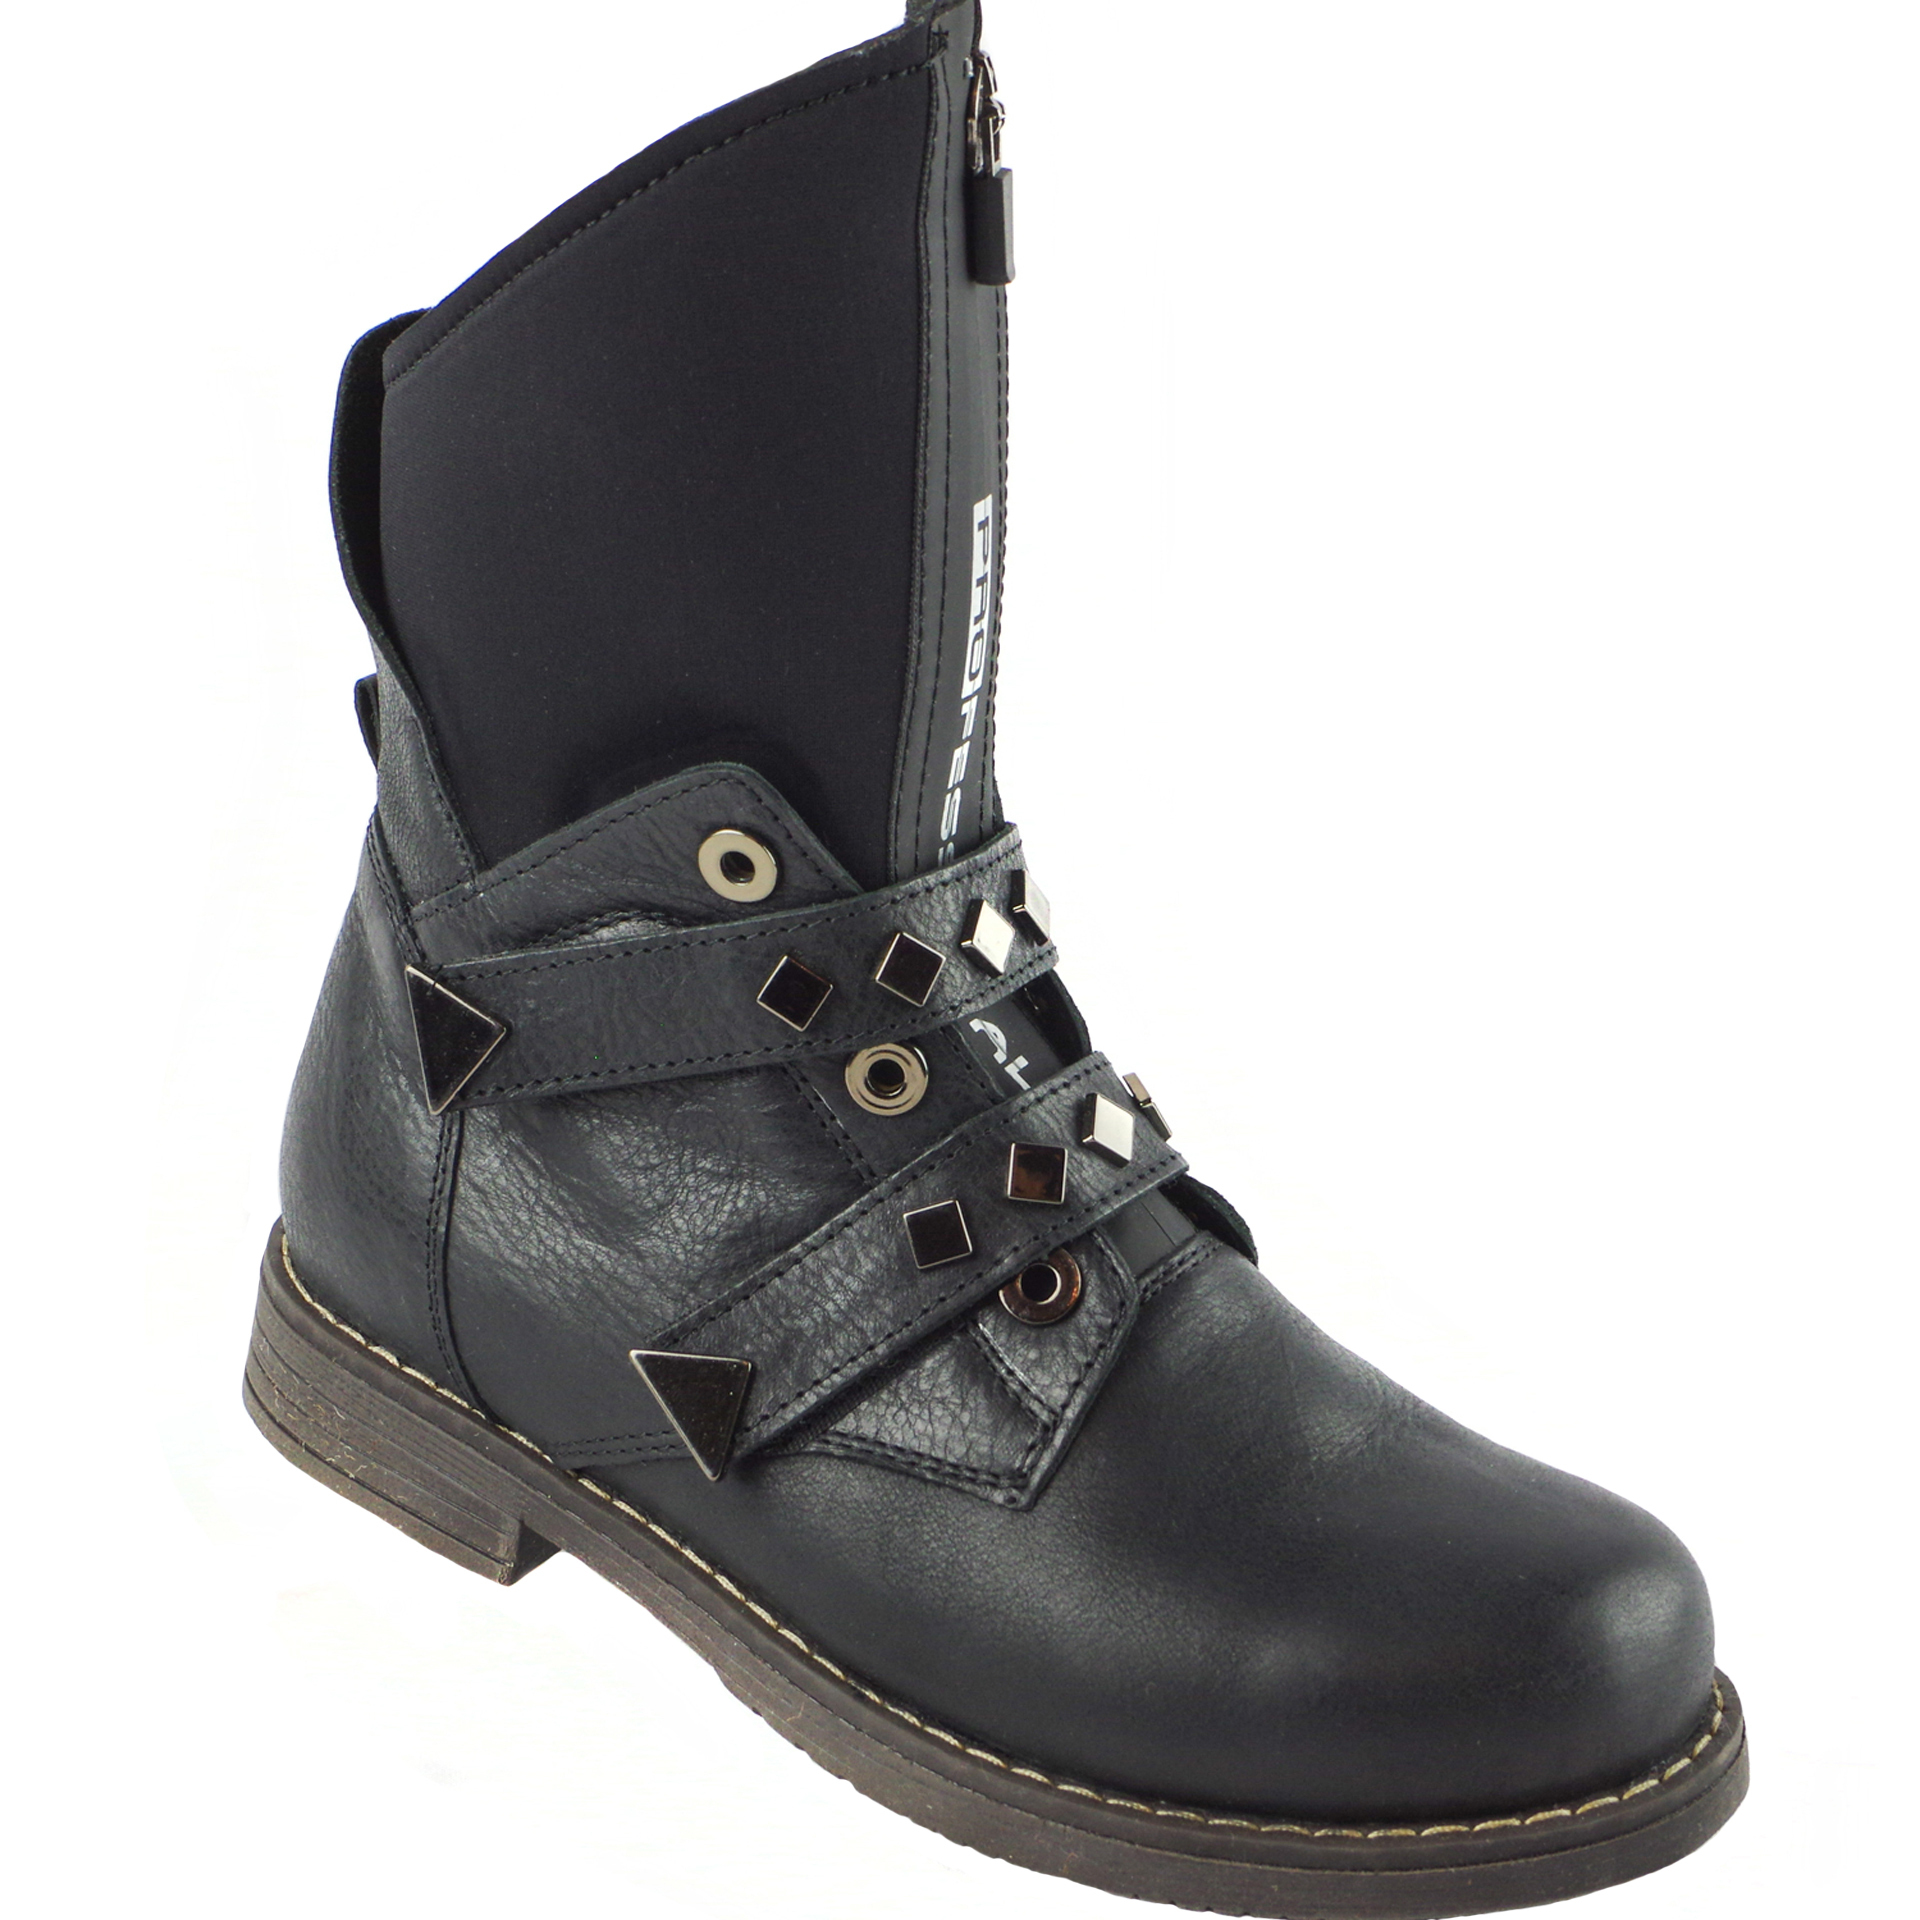 Демисезонные ботинки подростковые (1883) материал Натуральная кожа, цвет Черный  для девочки 32-38 размеры – Sole Kids